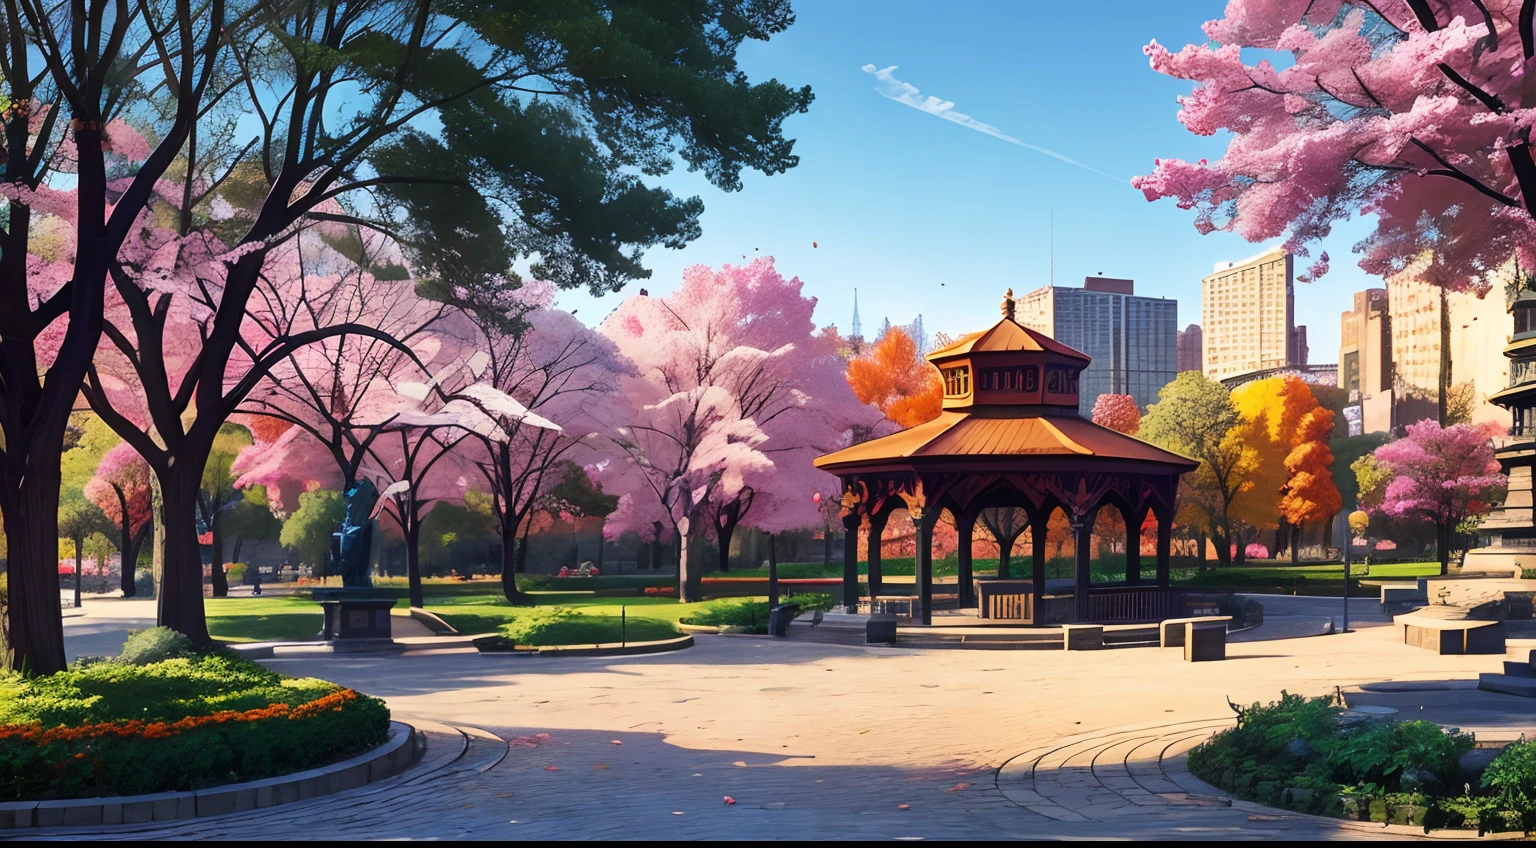 (最好的品質:1.0), a vibrant park in the middle of a 明亮的 cityscape, 树木, 長椅, 1 尊雕像, 1 個涼亭, 鵝卵石小路, 漫畫風格, 明亮的